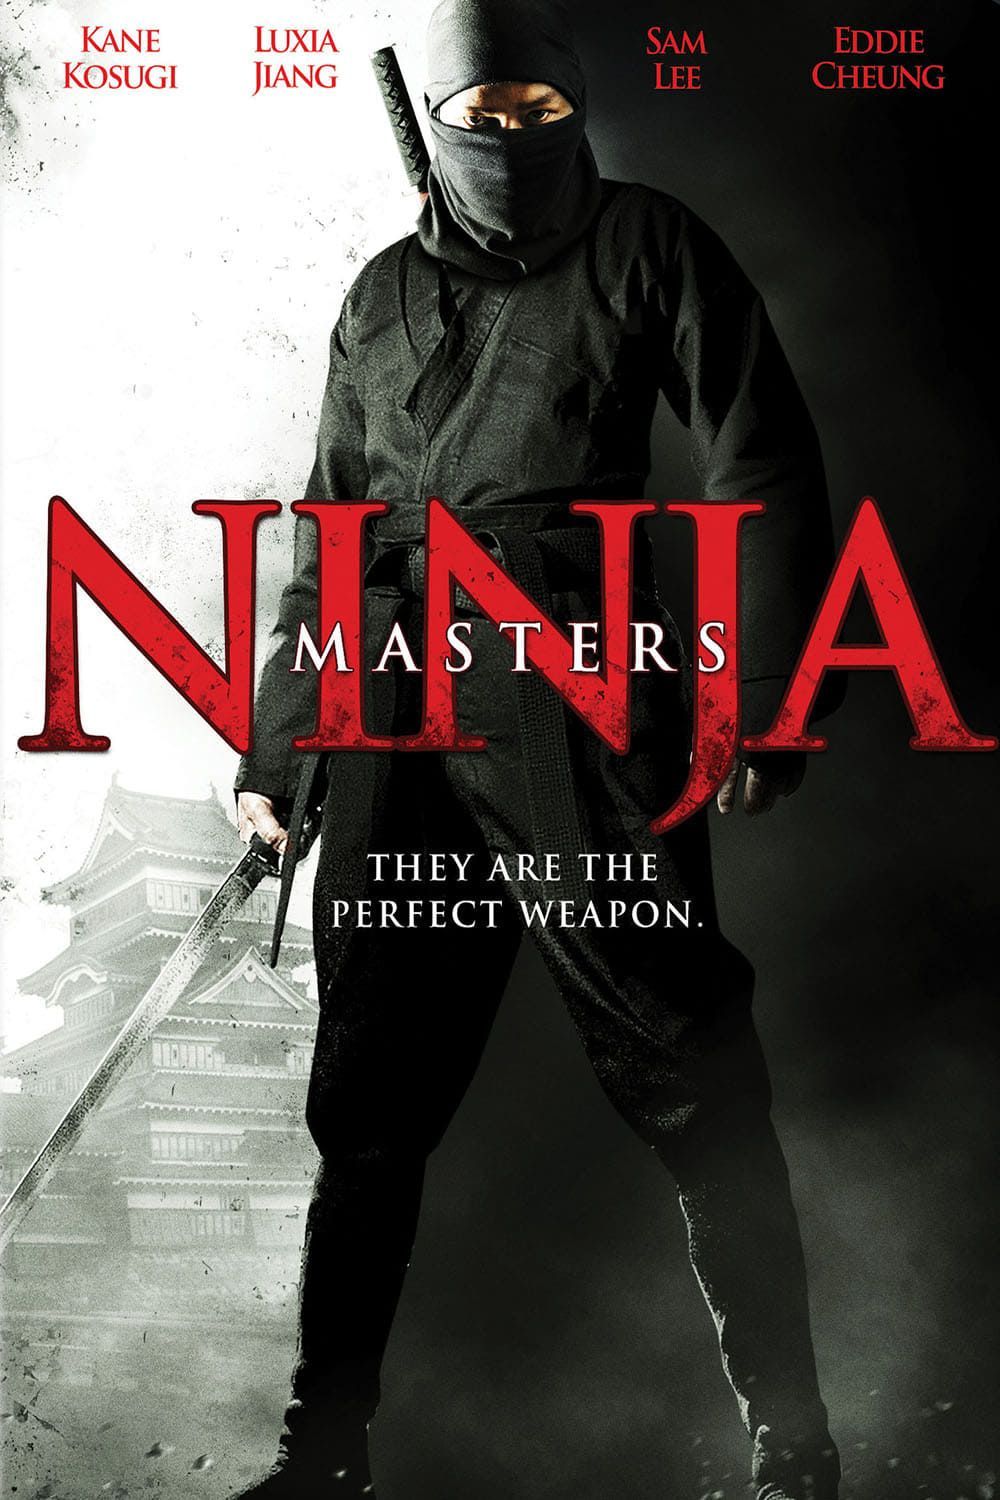 Ninja Assassin, Full Movie